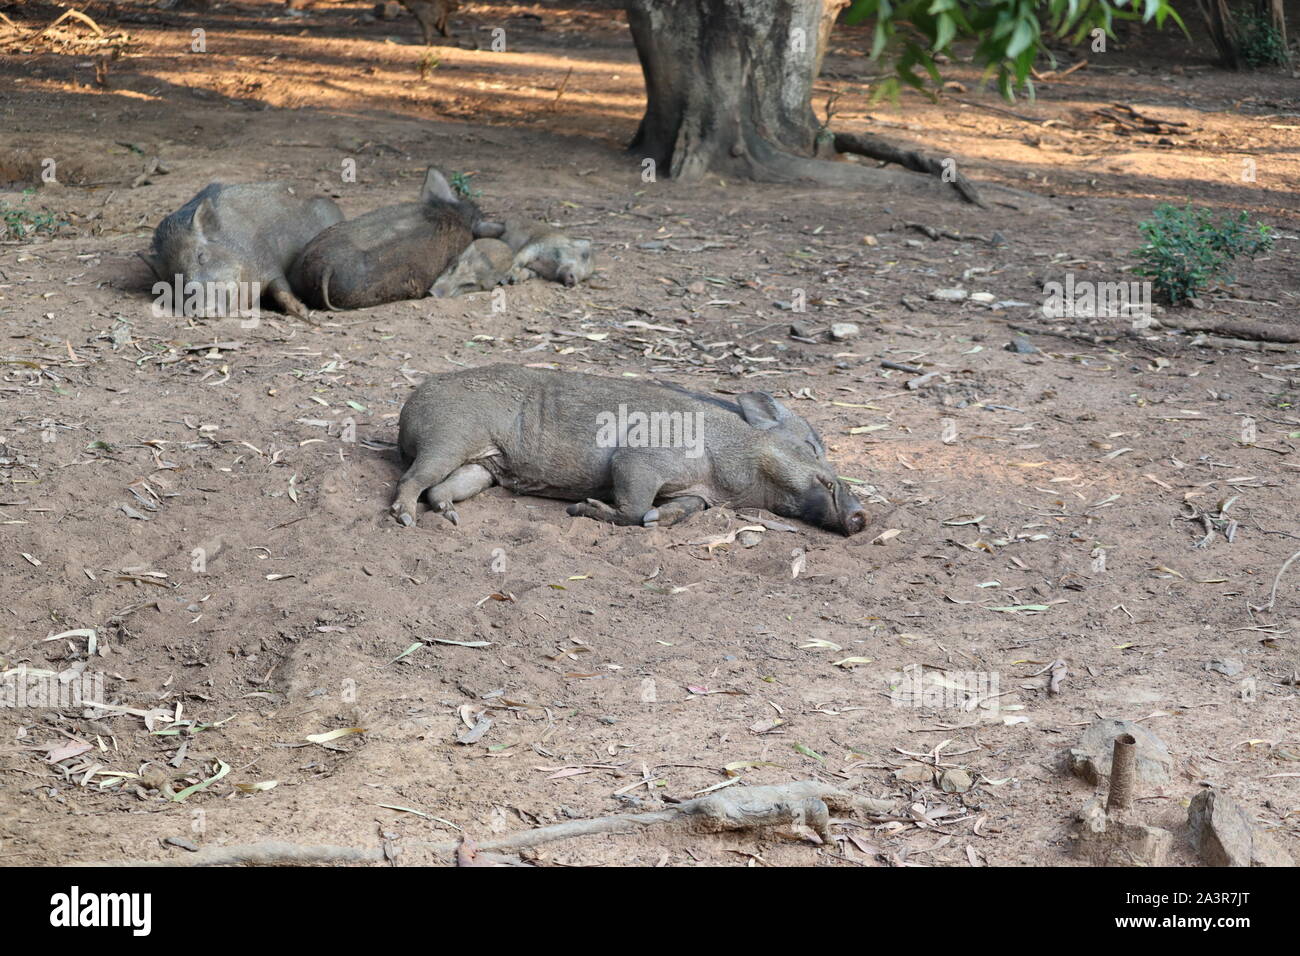 Wildschwein (Sus scrofa) schlafend in der Wüste. Paar mächtige Wildschwein auf einem Rest, Tier ruht im frühen Frühjahr, Jagd in Russland. Close-up. - Stockfoto